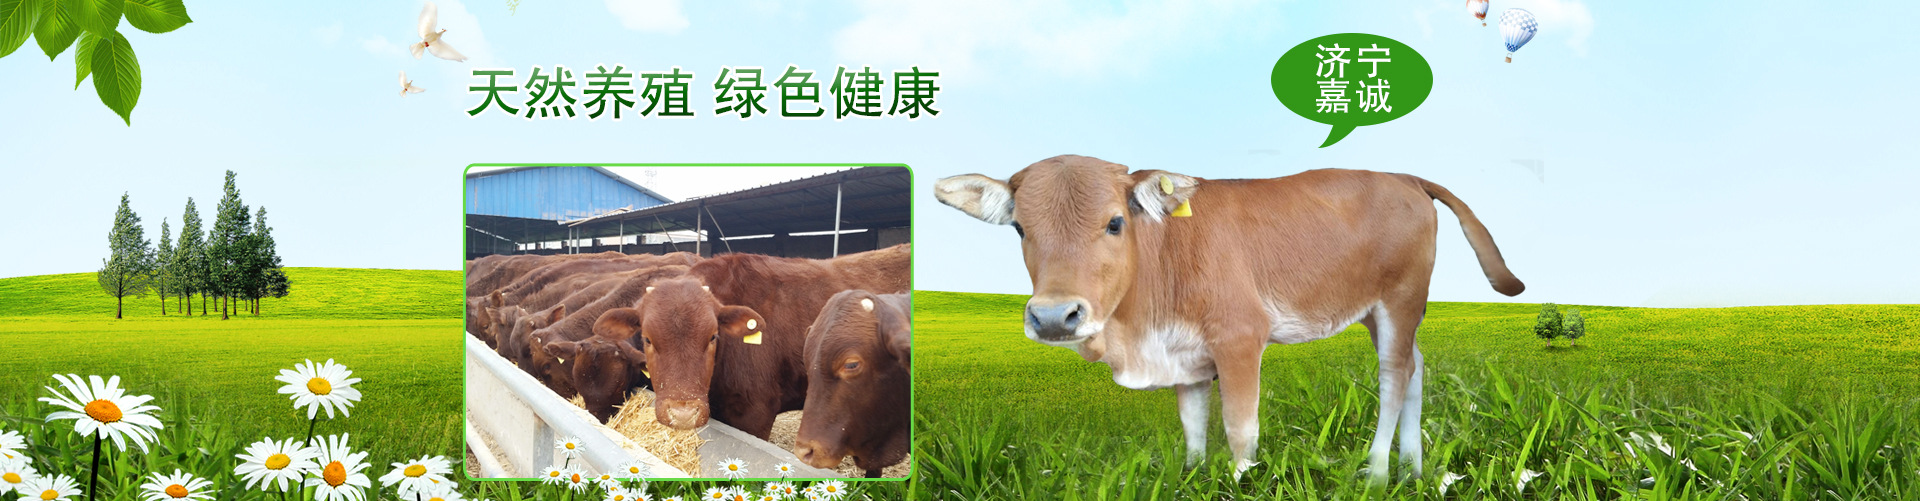 大型养殖场卖西门塔尔牛改良肉牛小牛犊 低价出售西门塔尔示例图1